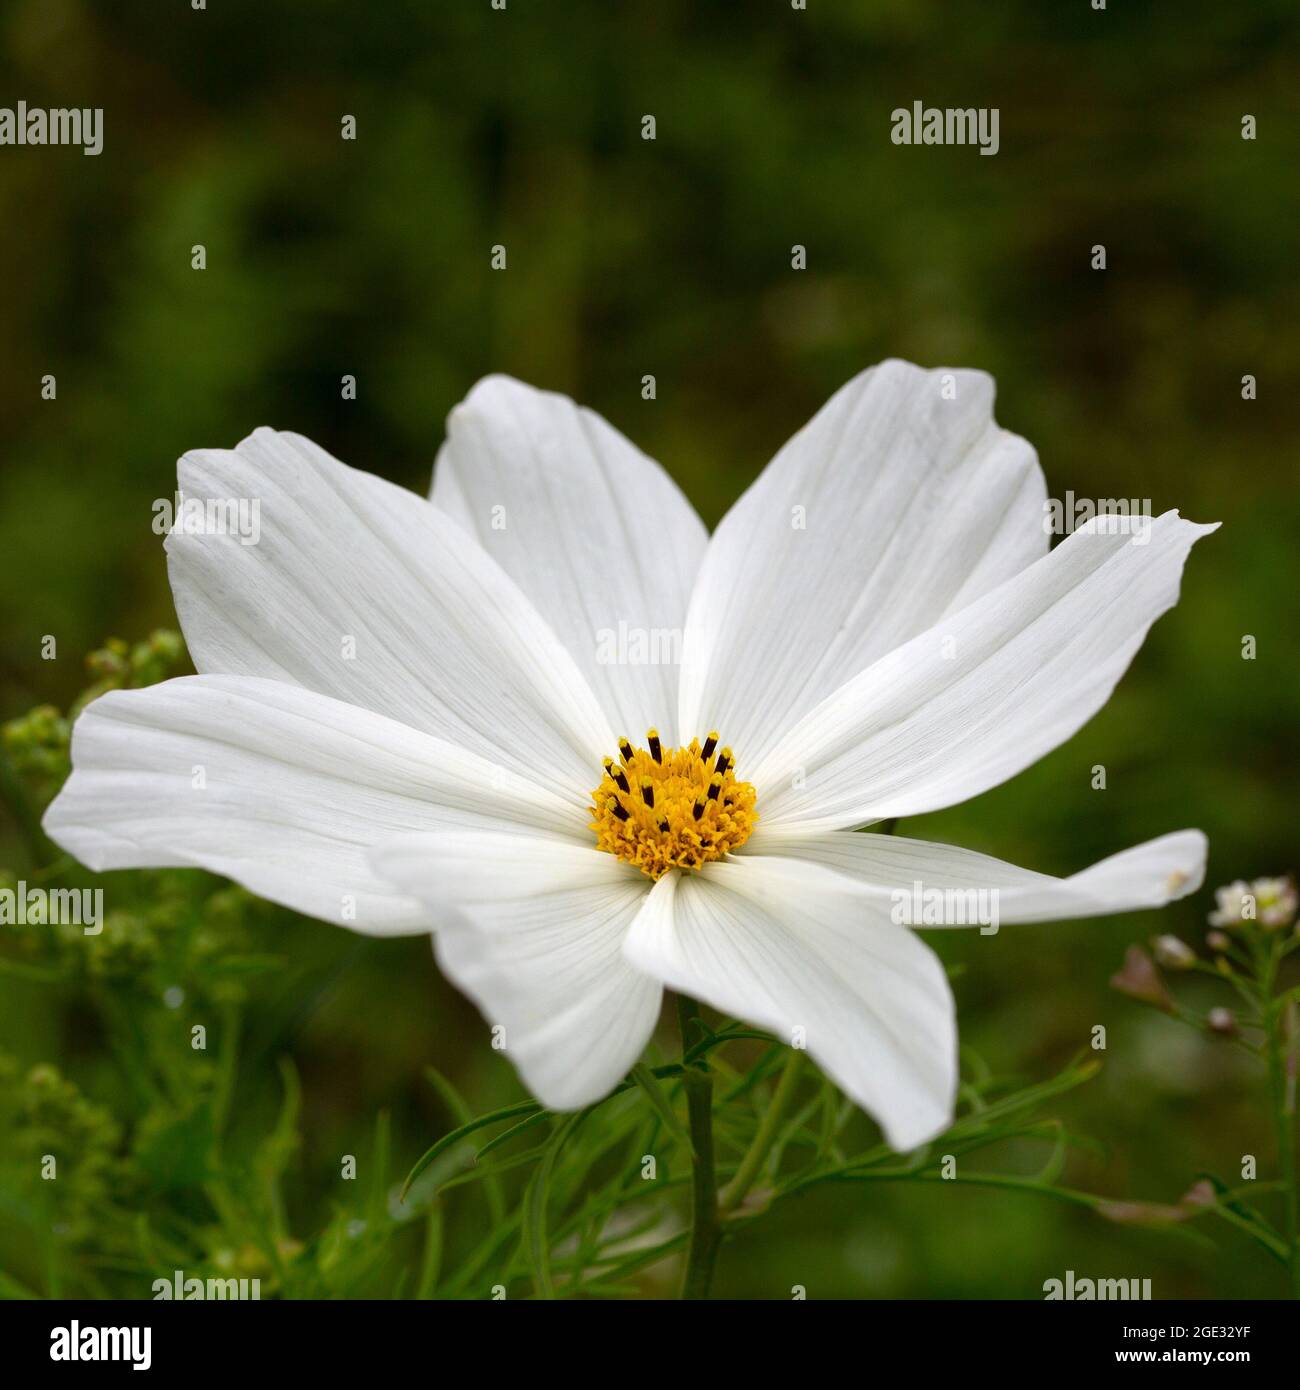 Cosmea (Cosmos bipinnatus), single white flower Stock Photo